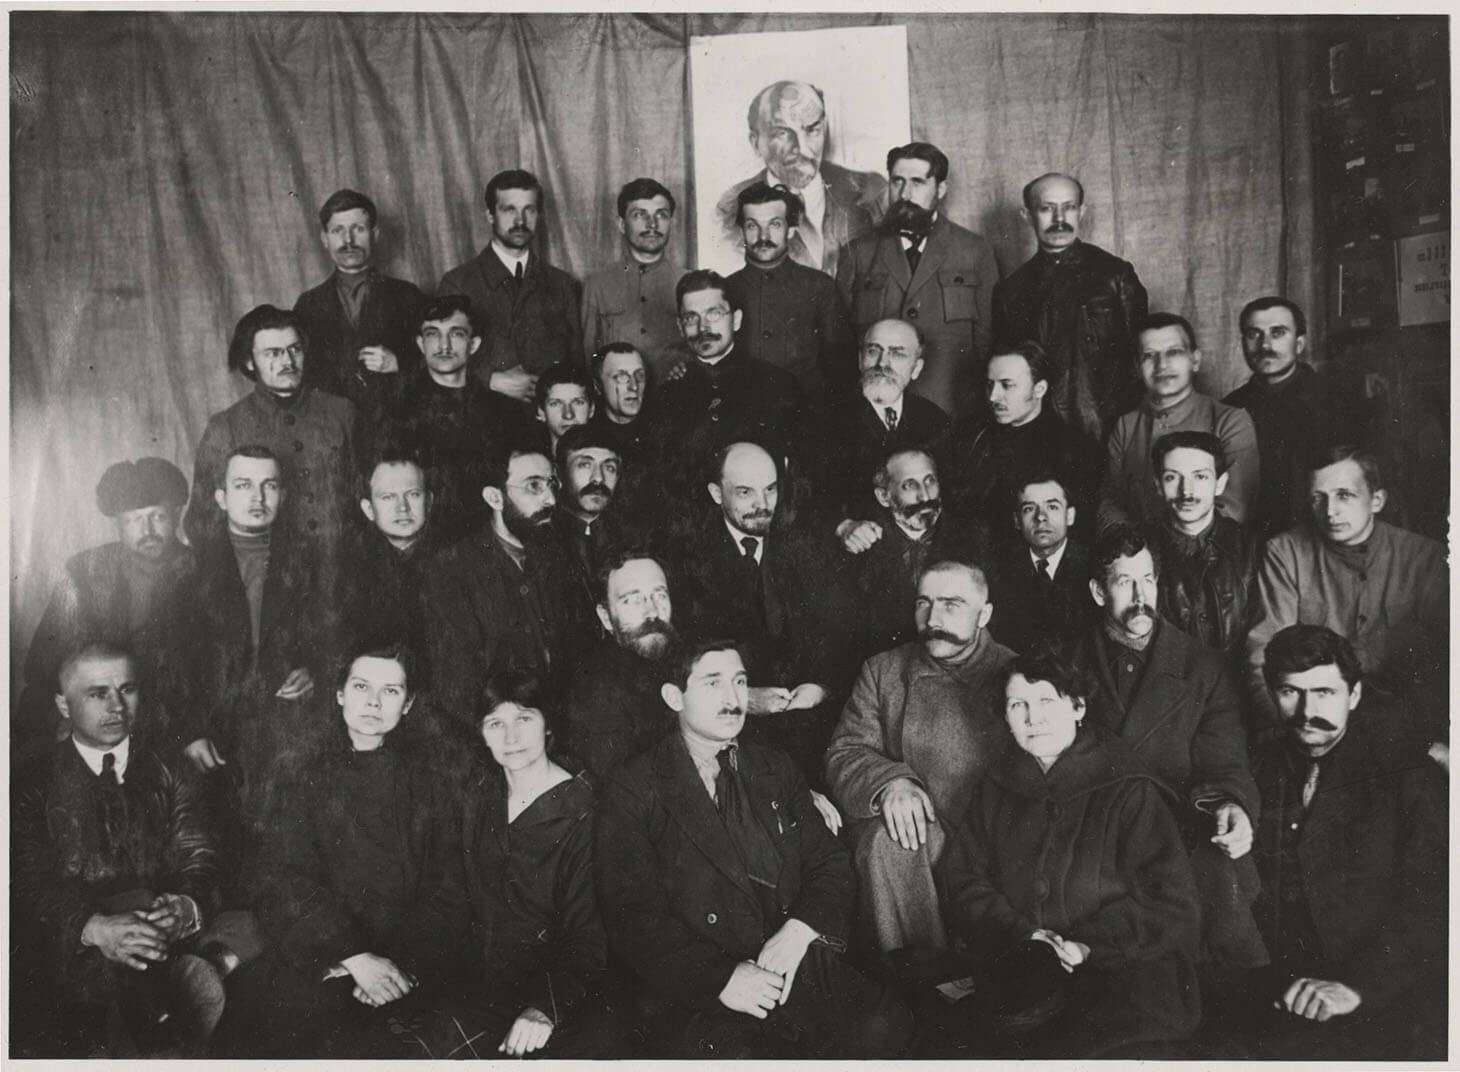 Czarno-biała fotografia przedstawia pamiątkowy portret zbiorowy we wnętrzu. W centrum grupy, w drugim rzędzie, pozuje osobiście Włodzimierz Lenin w otoczeniu wielu mężczyzn i trzech kobiet. Postacie ustawione są w czterech rzędach na tle udrapowanej tkaniny. W jej centrum i u góry kadru widnieje portret Lenina. Kobiety siedzą w pierwszym rzędzie. 